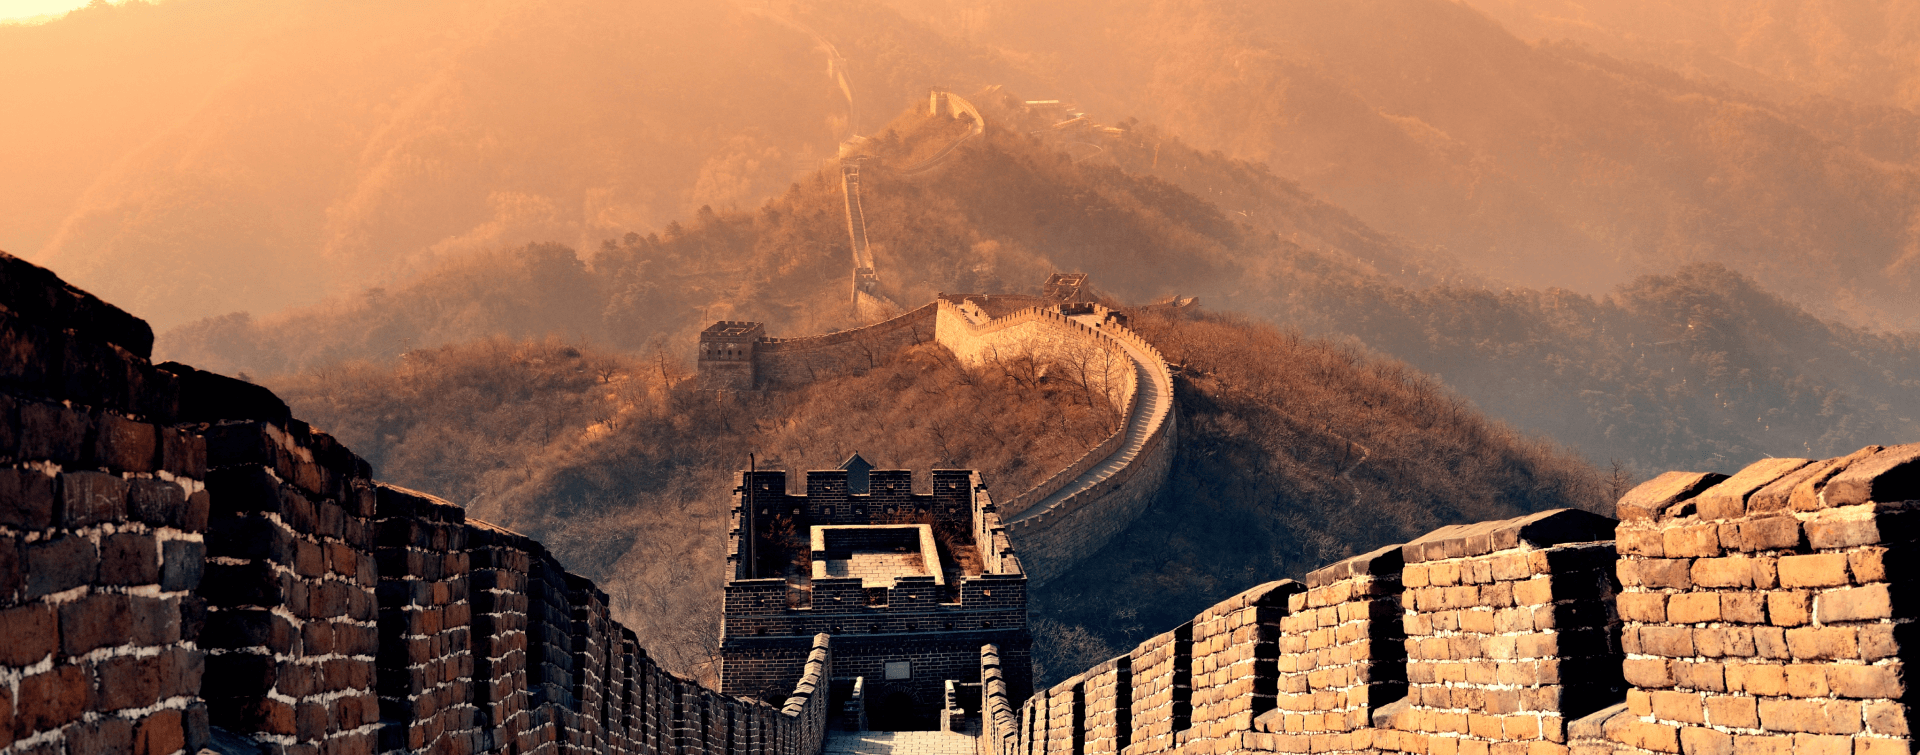 Великая китайская стена фон для презентации